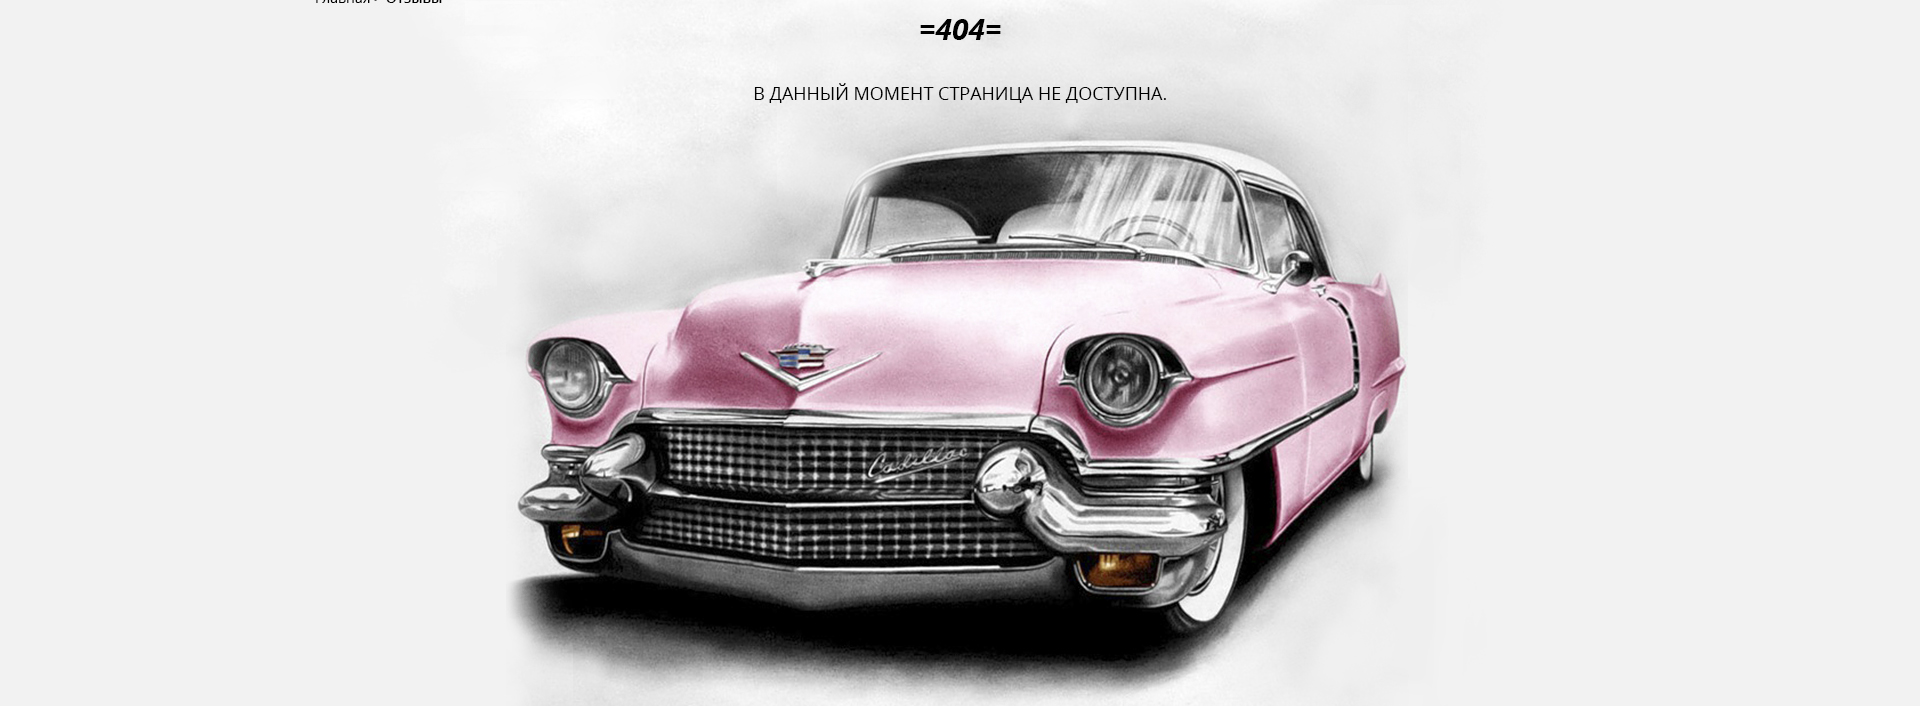 дизайн страницы 404 автопроката